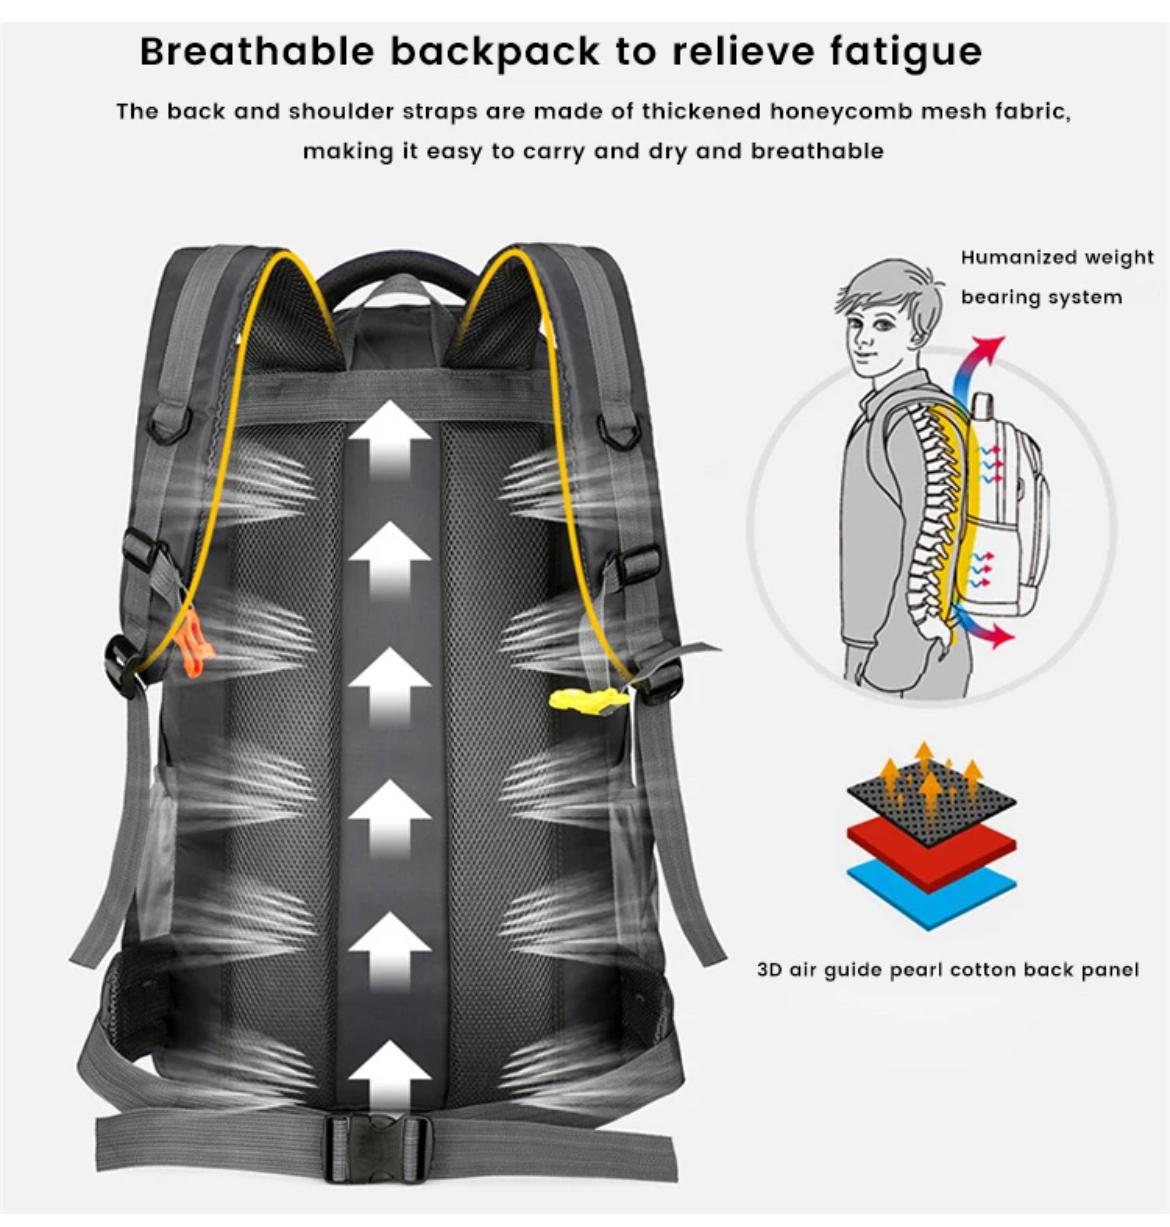 Mens Outdoor Backpacks Mountaineering Bags Waterproof Hiking Backpacks Large Capacity Travel Bags